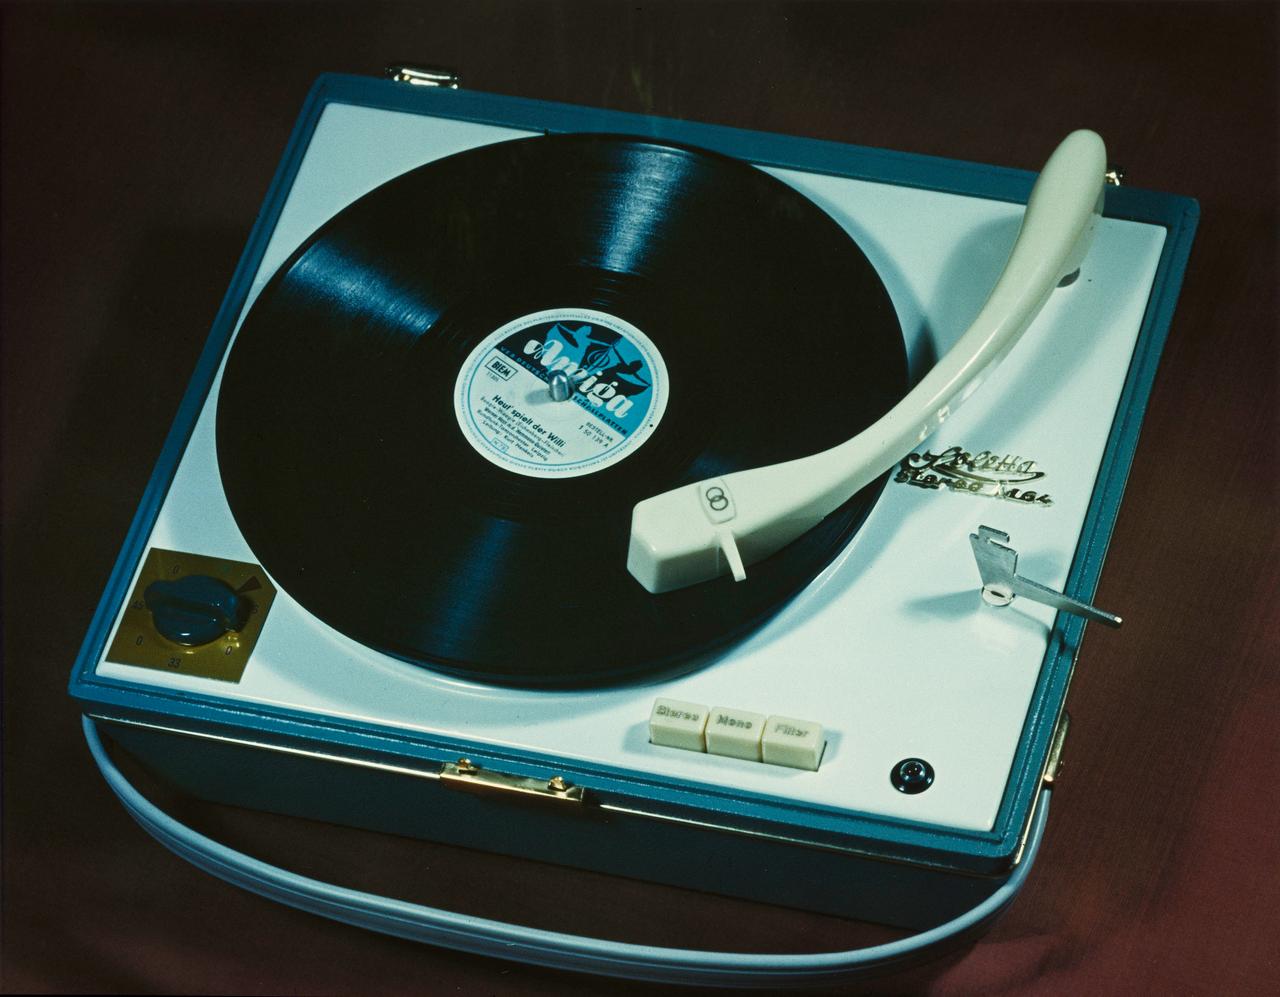 Tontechnik aus der DDR: Soletta Plattenspieler, auf dem eine Amiga-Platte liegt, aufgenommen 1964.